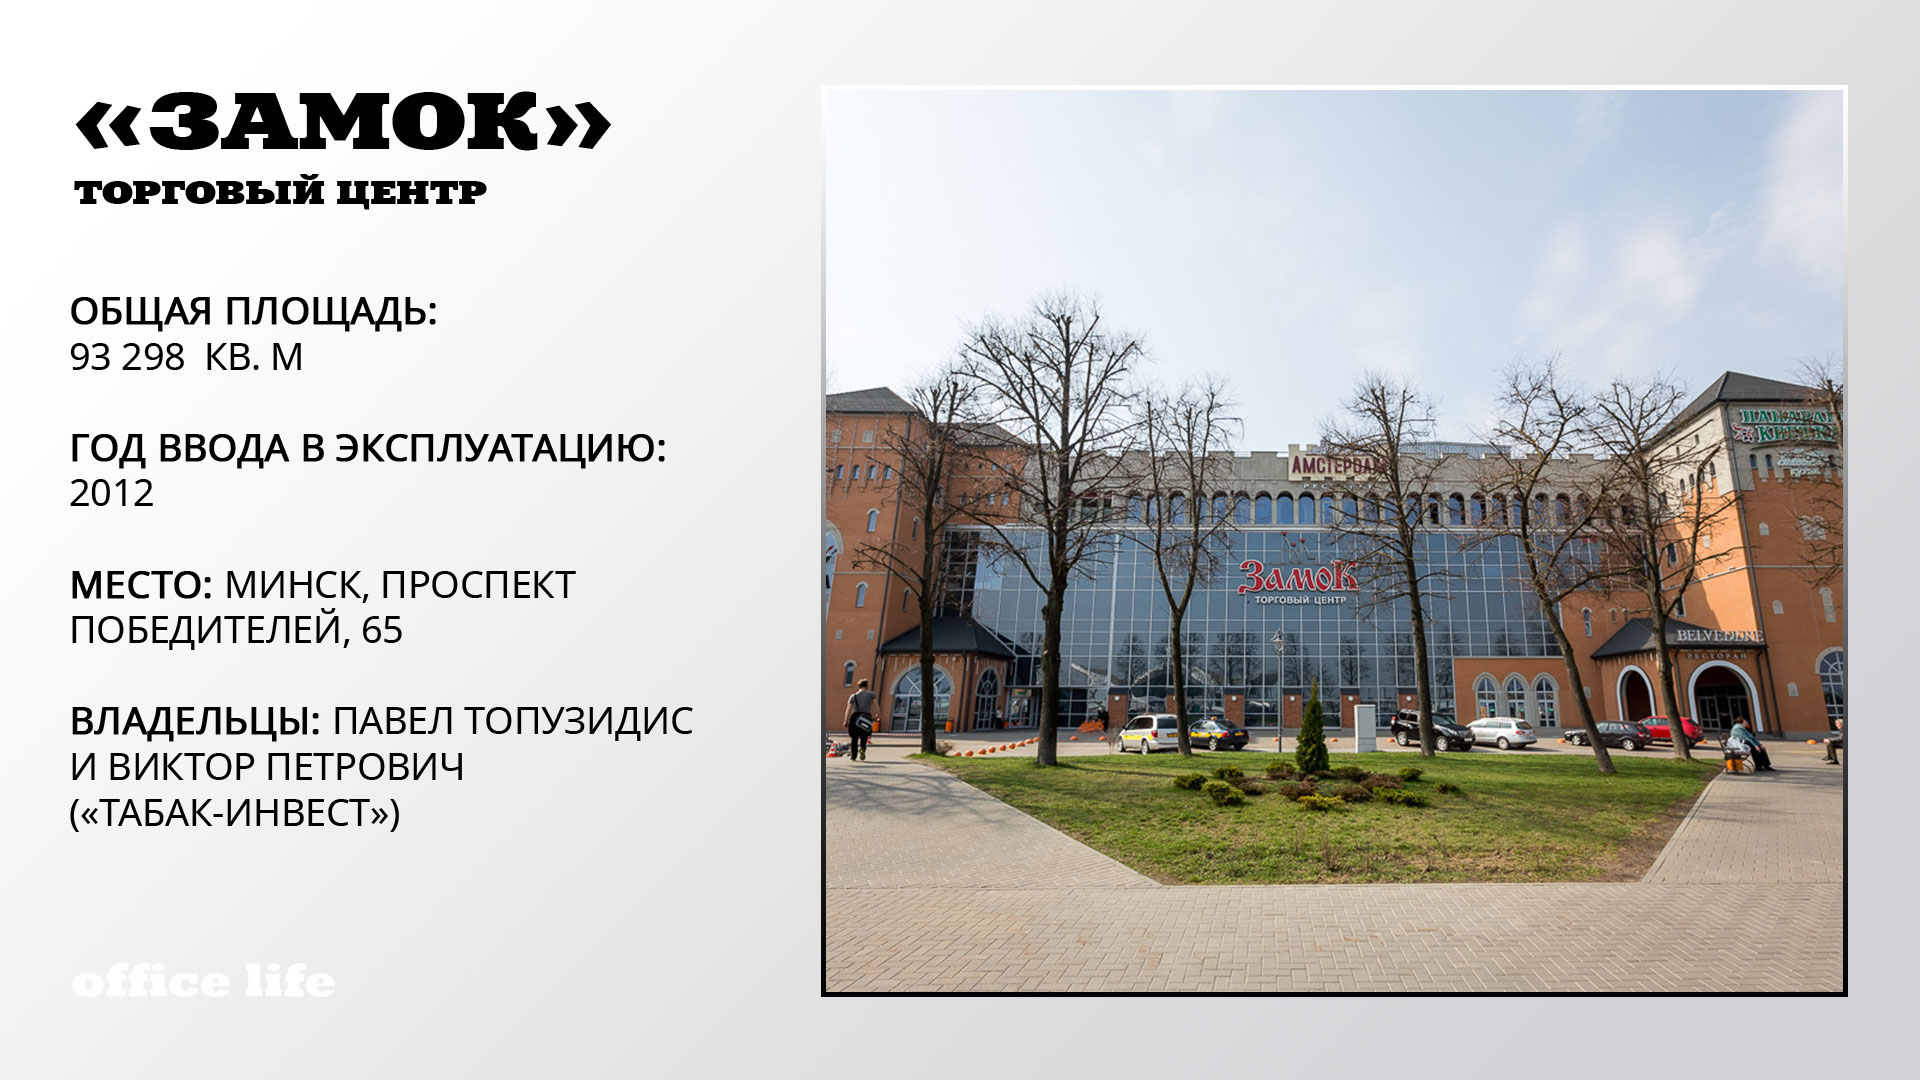 По пятьдесят! Топ-10 крупнейших частных торговых центров Беларуси